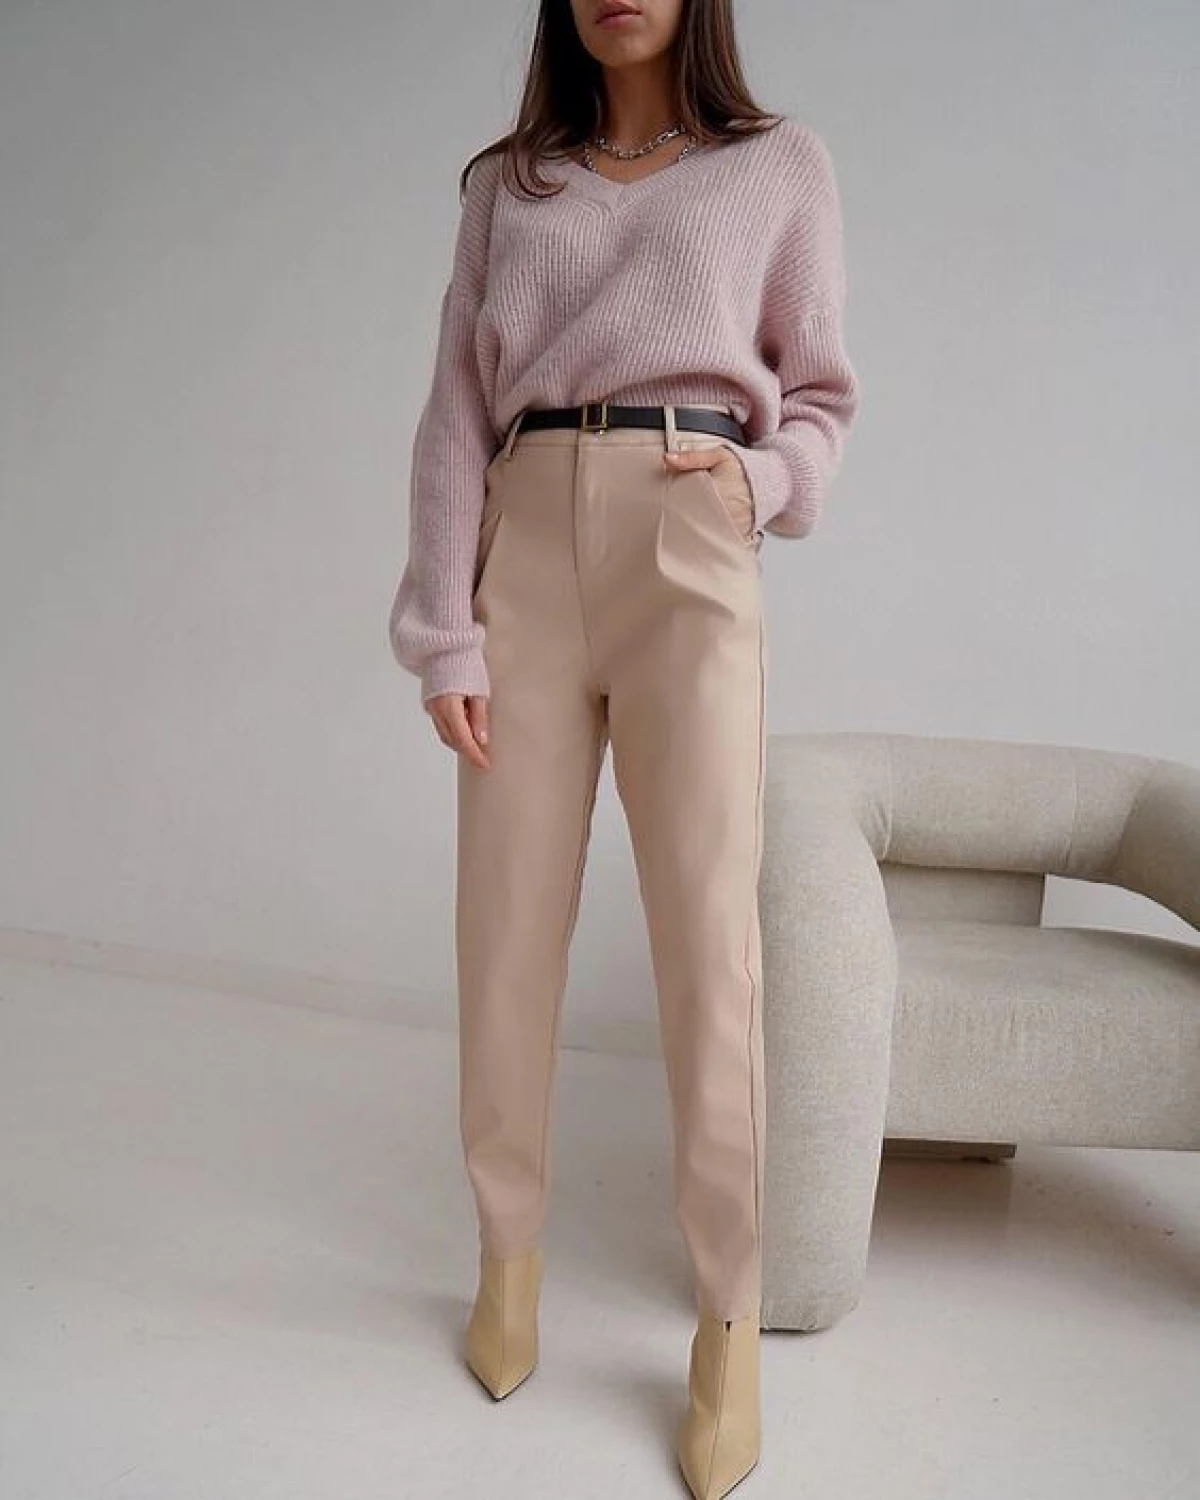 Pantalones de invierno de moda 2021: Modelos con estilo para imagen impecable 15609_11